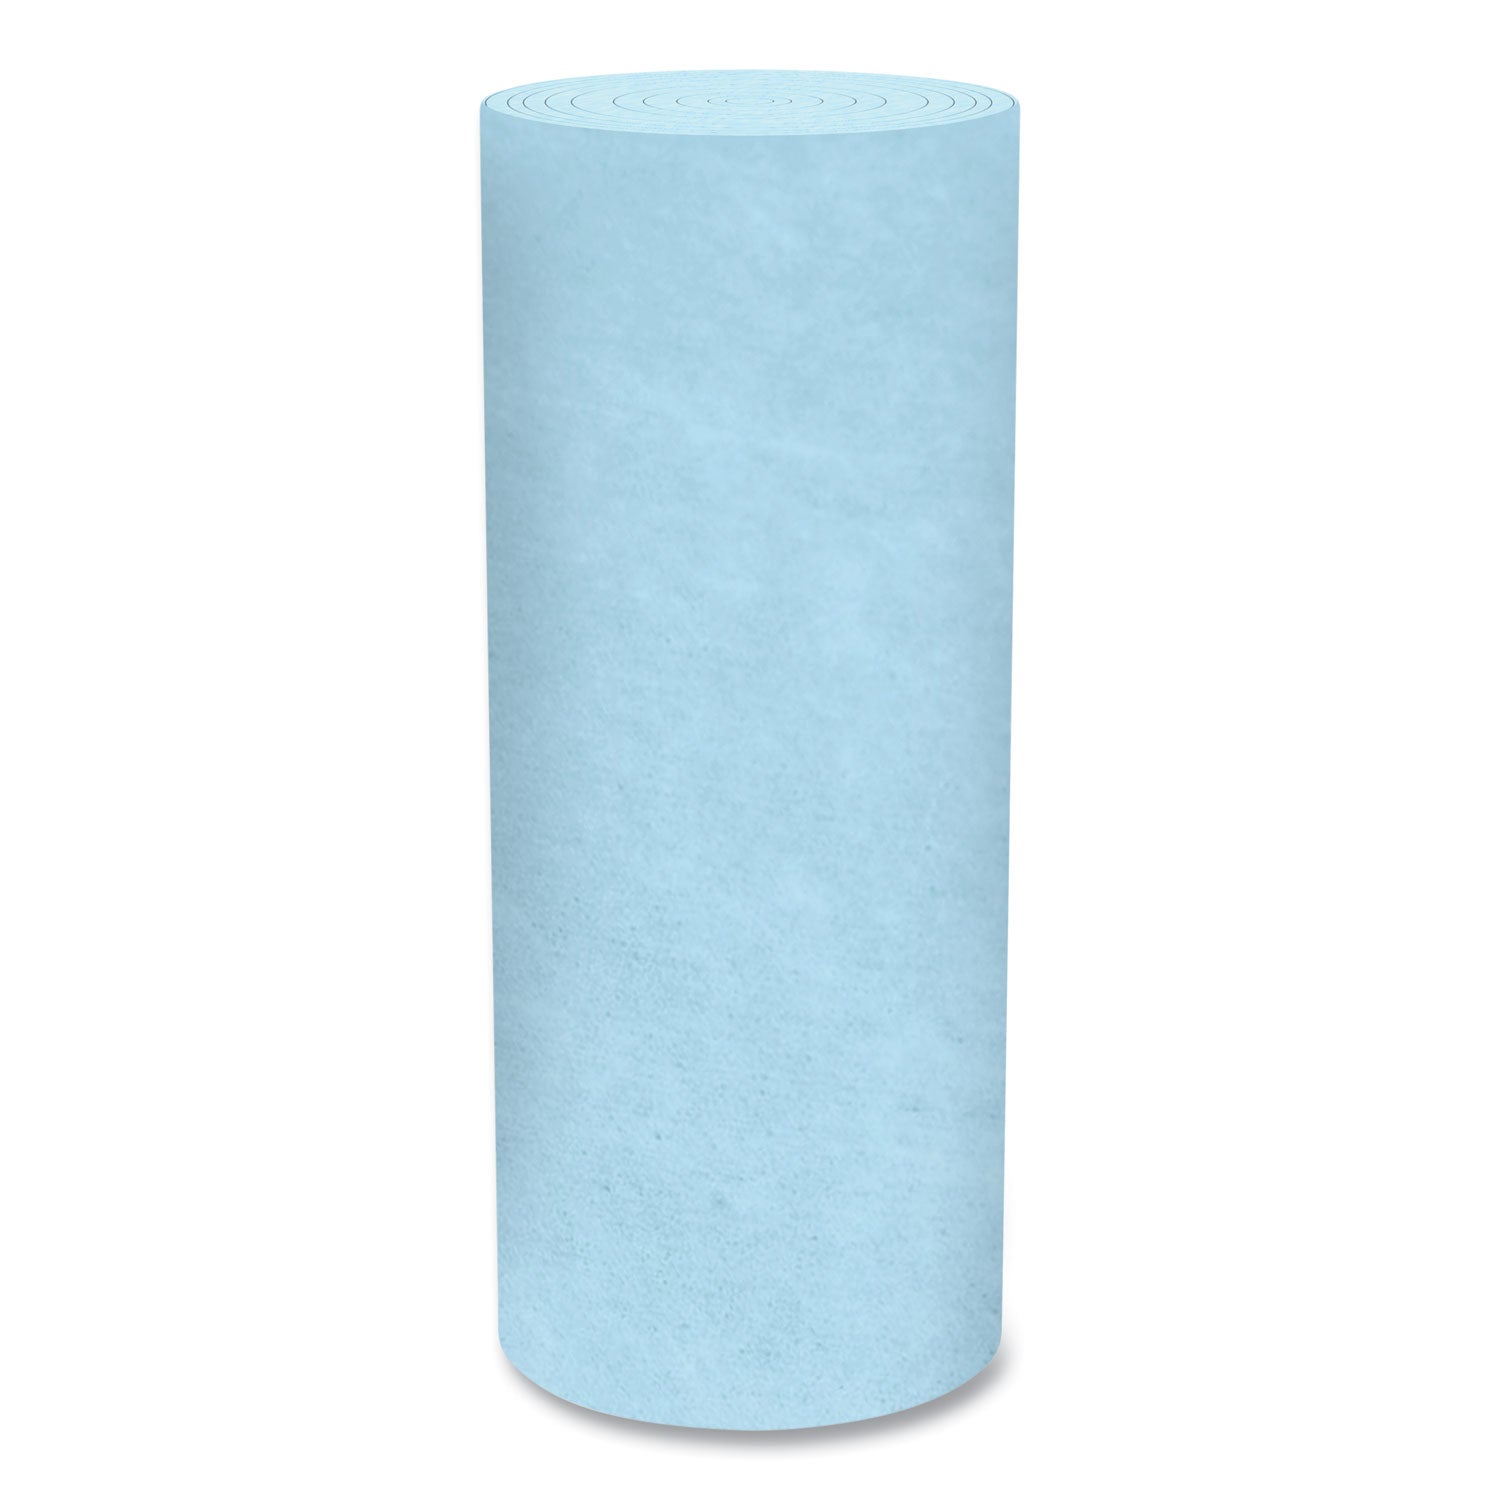 Pro Shop Towels, Heavy Duty, 1-Ply, 10.4 x 11, Blue, 12 Rolls/Carton - 